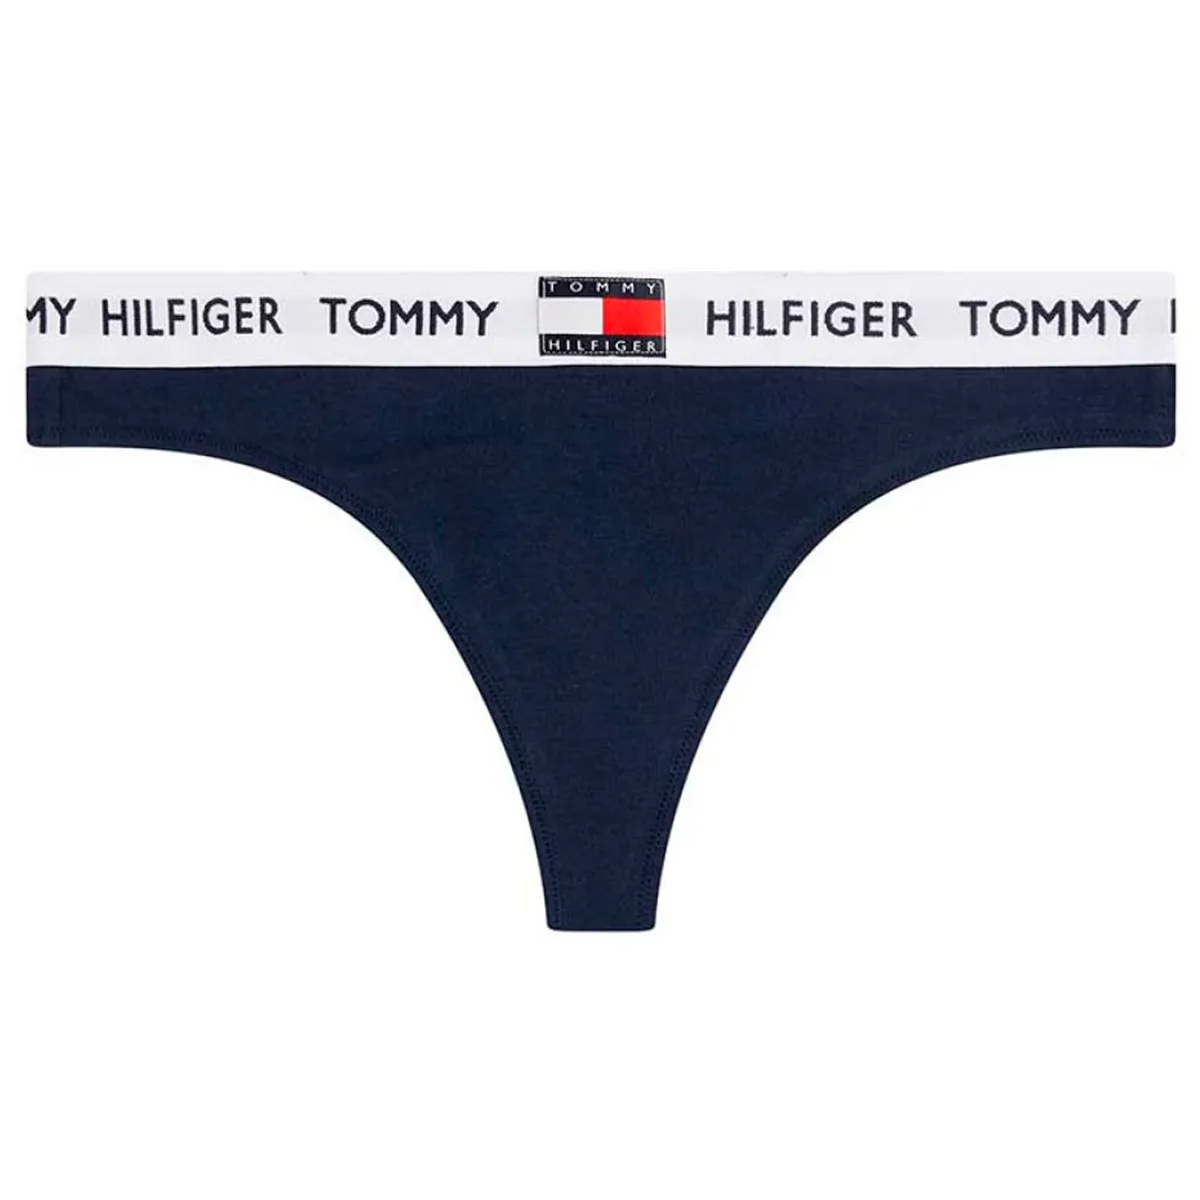 tilgive vegetation forvridning Tommy Hilfiger • TOMMY HILFIGER STRING 02198 CHS • Pris kr. 162